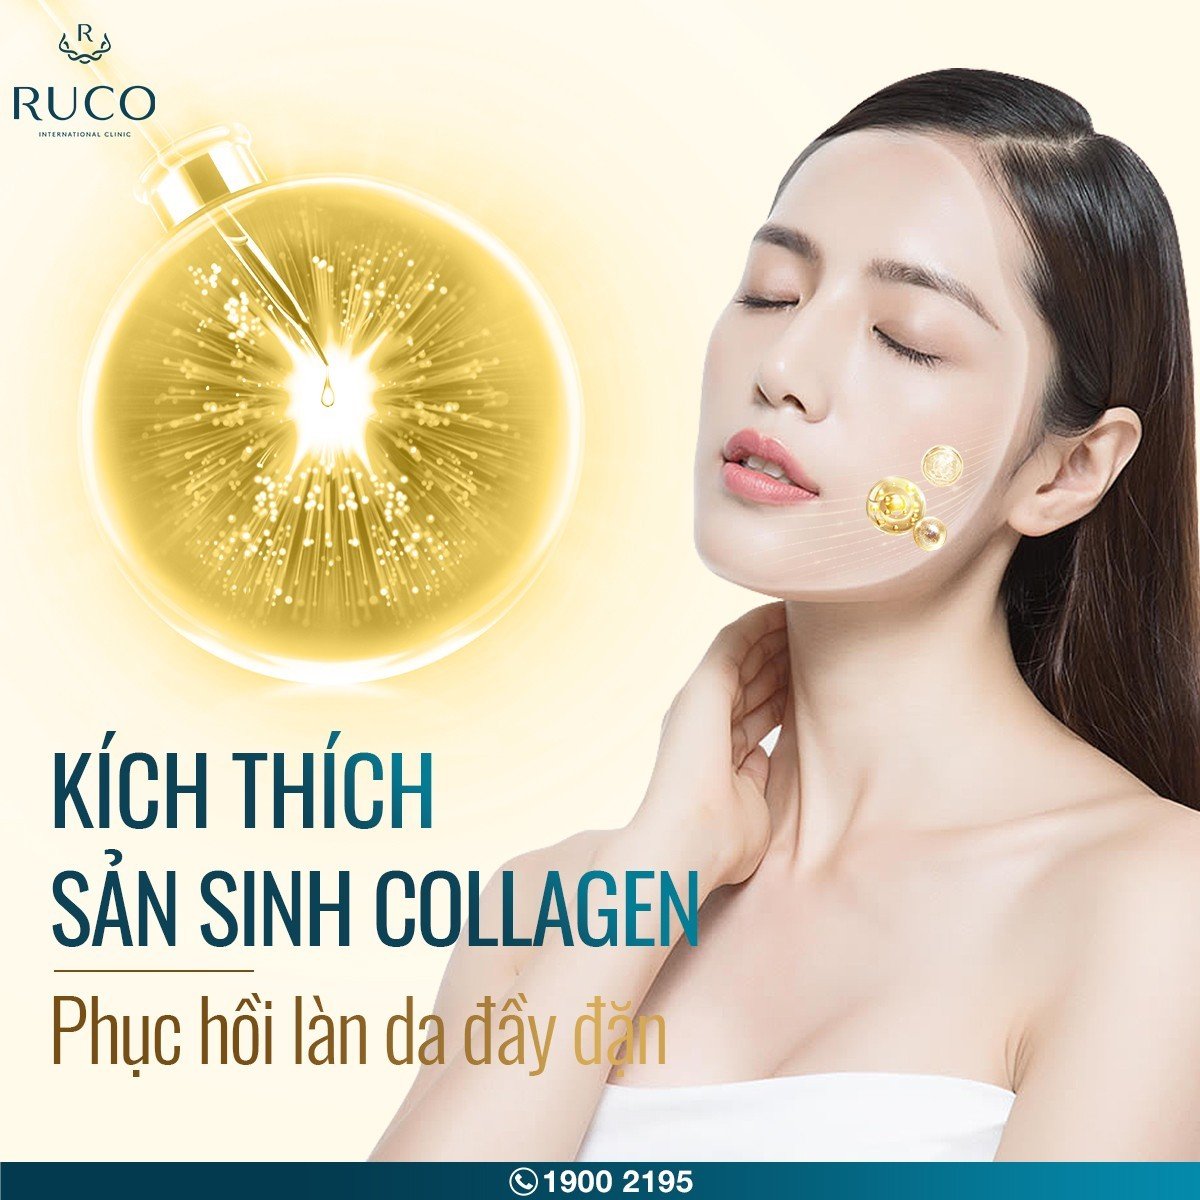 vitamin c kich thich san sinh collagen